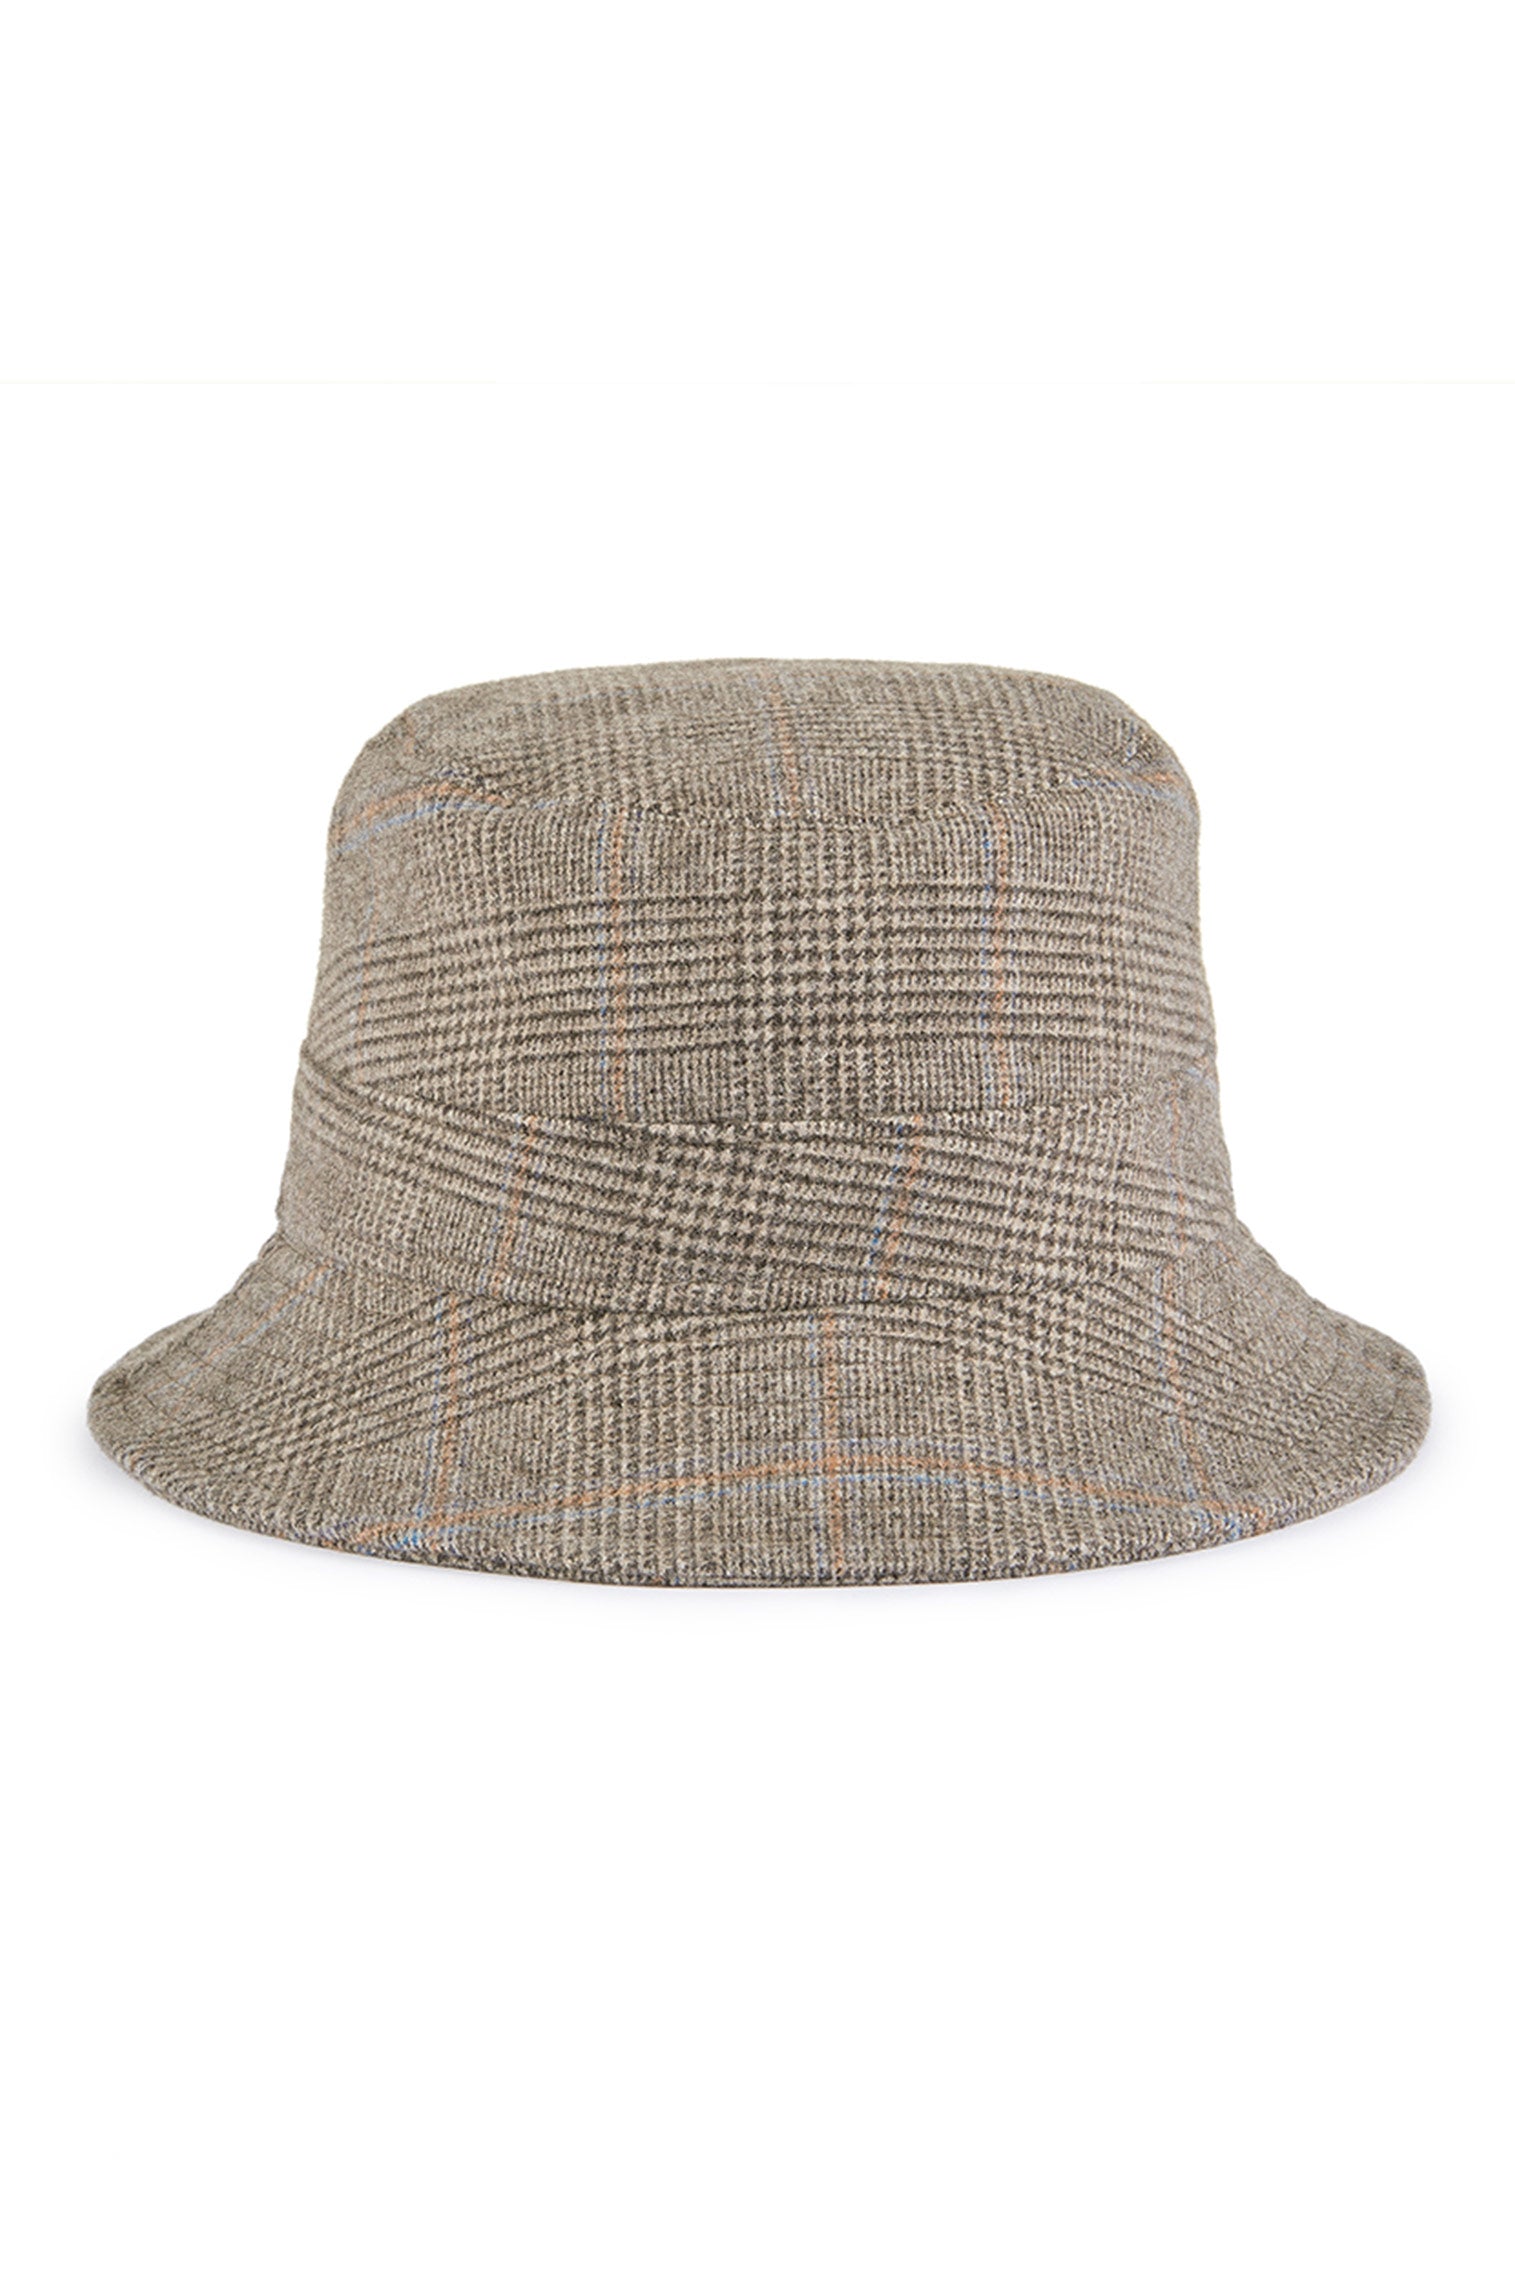 Escorial Wool Bucket Hat - Packable & Rollable Hats - Lock & Co. Hatters London UK